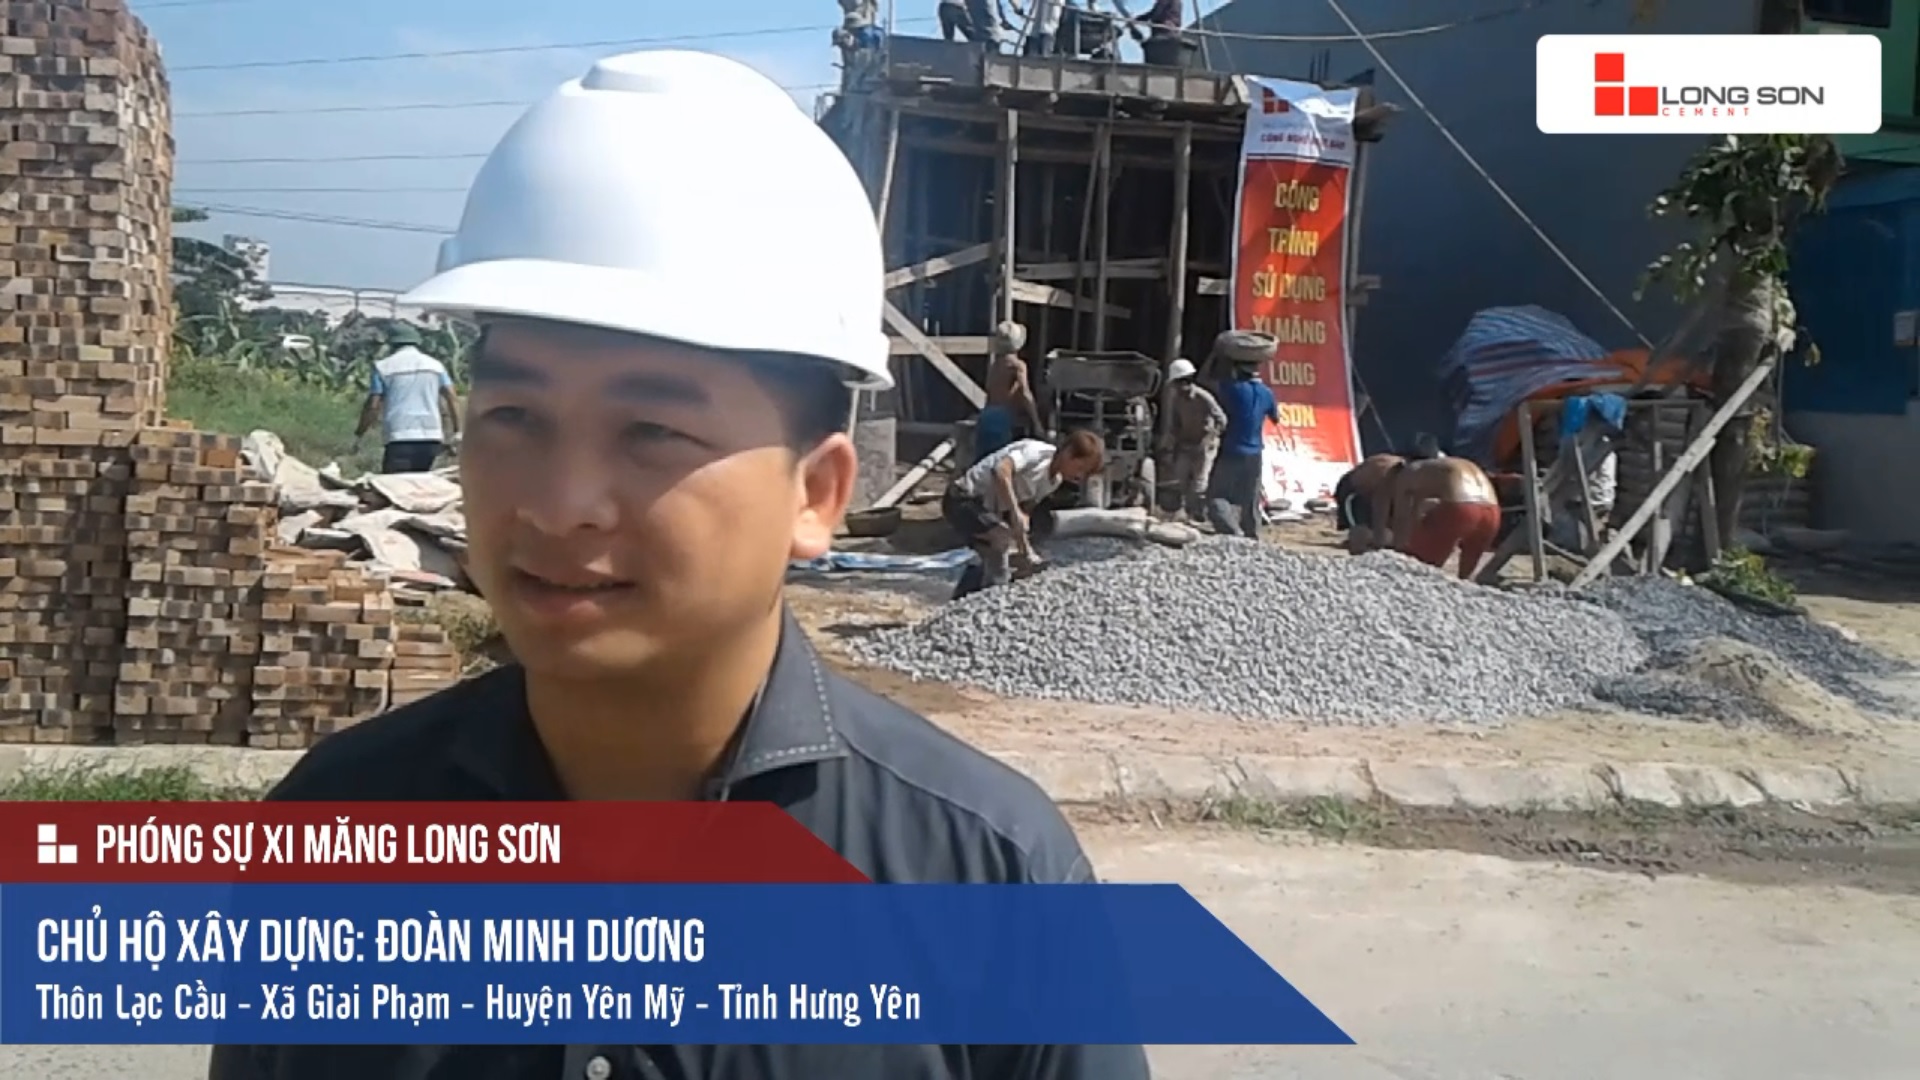 Phóng sự công trình sử dụng Xi măng Long Sơn tại Hưng Yên ngày 15.05.2018